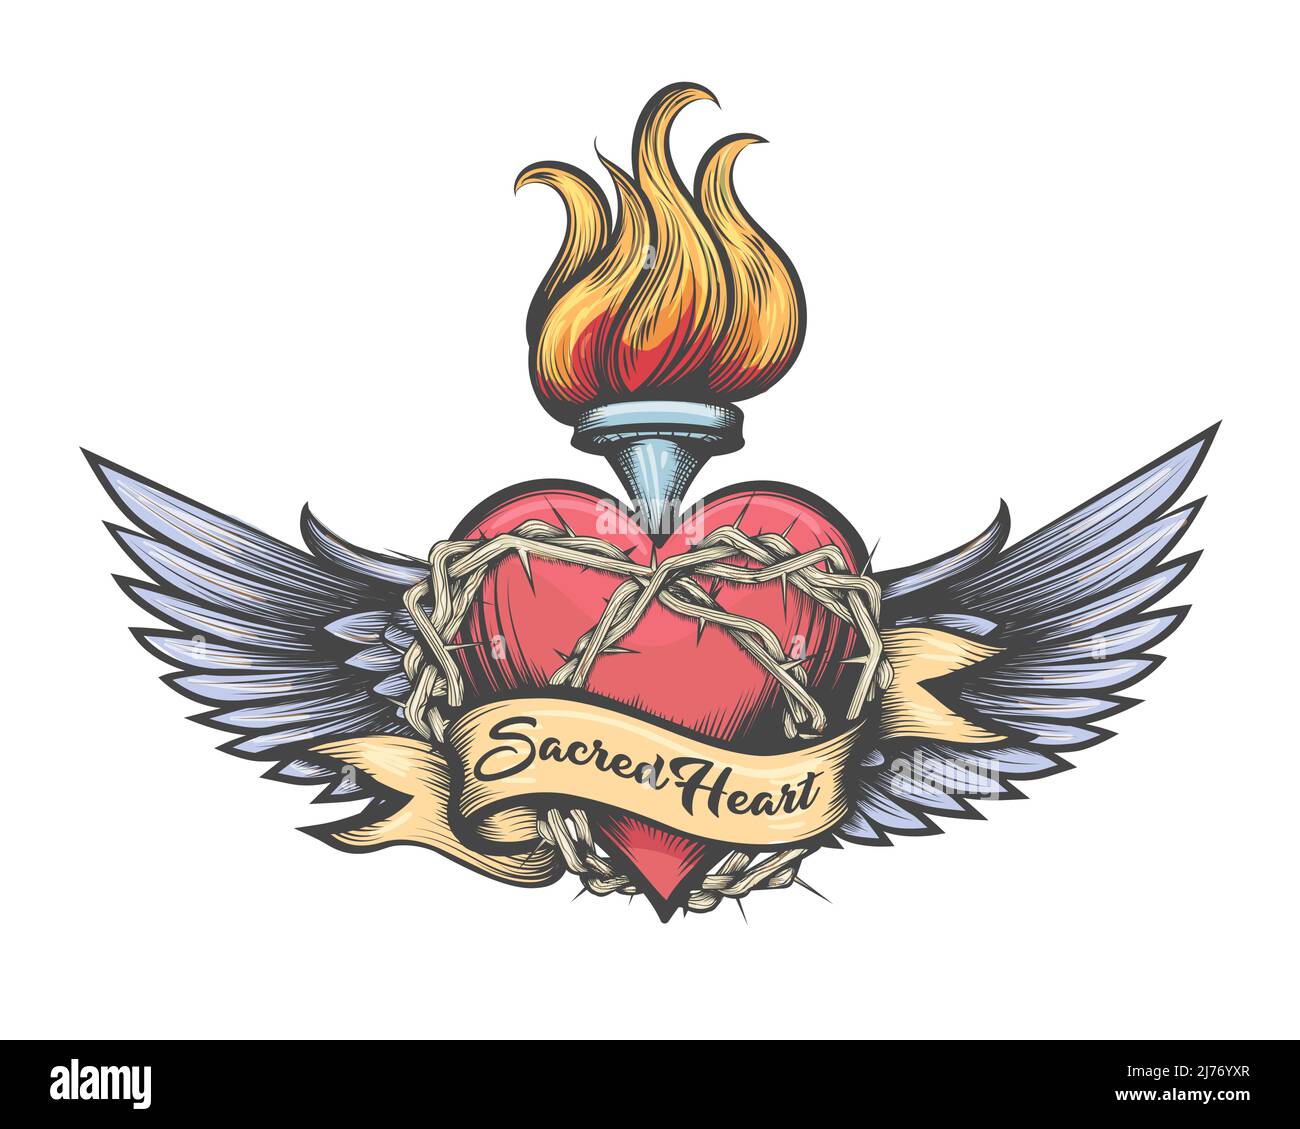 Sacred heart neo traditional tattoo by AntoniettaArnoneArts on DeviantArt